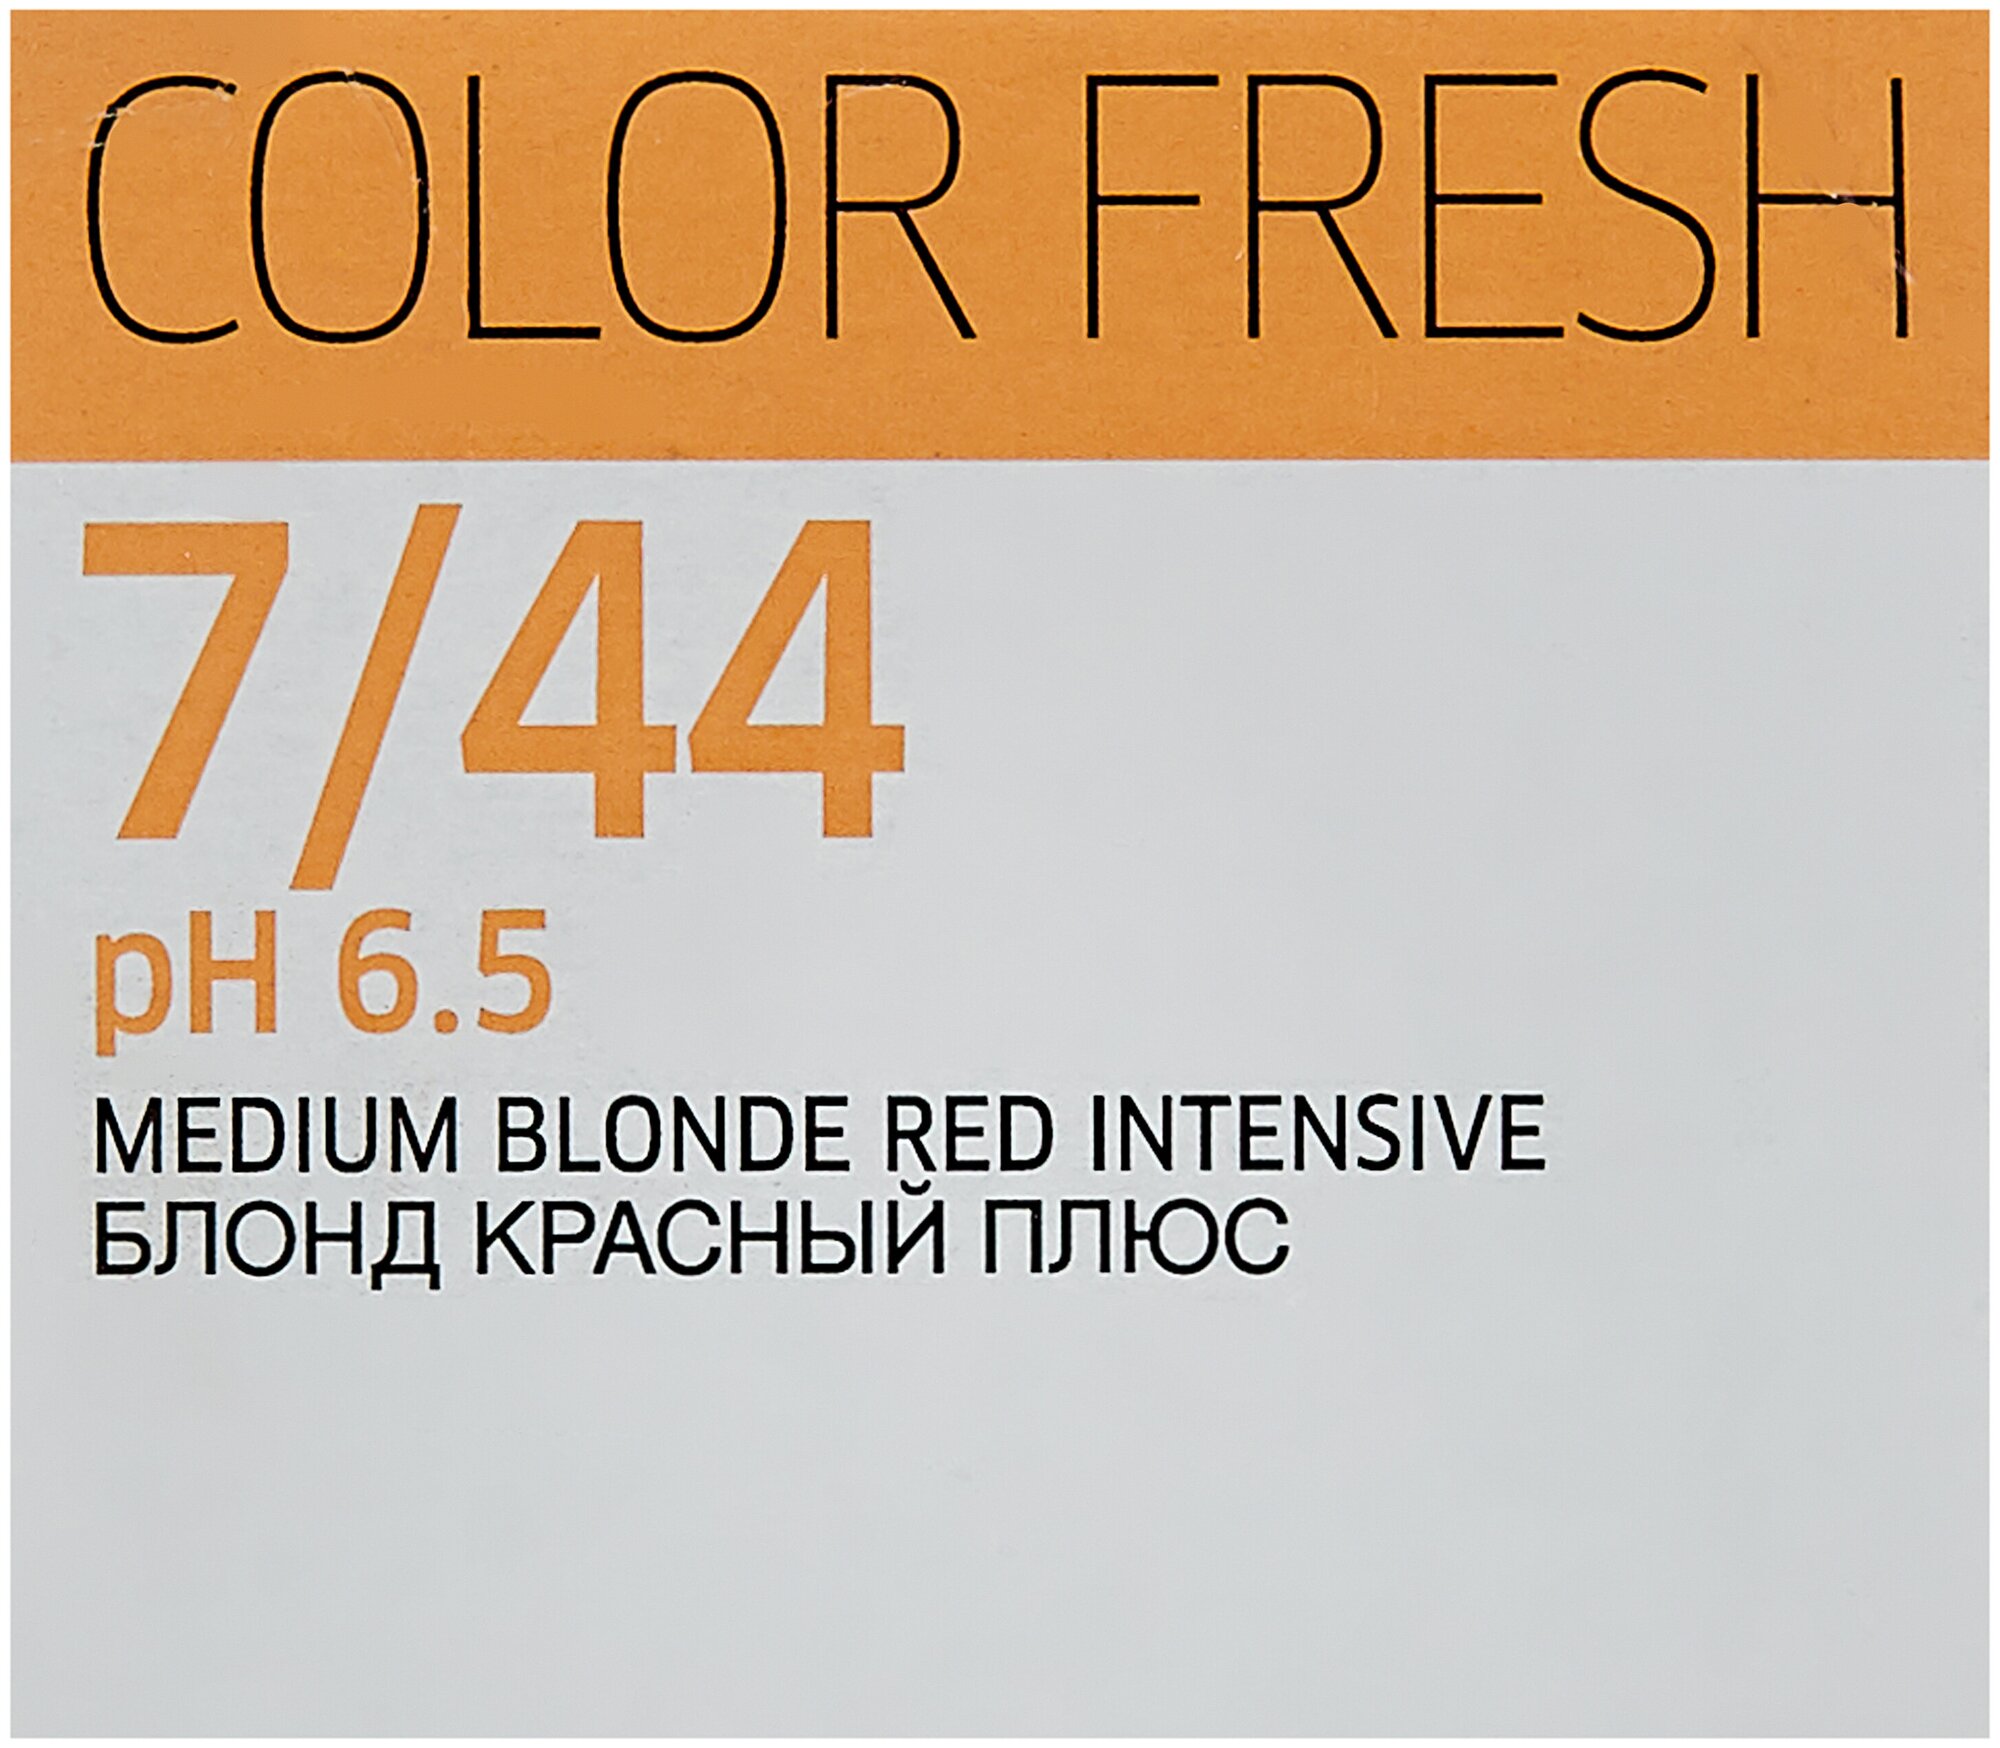 Wella Professionals Color fresh Теплые тона 75 мл, оттенок 7/44, 7/44 блонд красный интенсивный (Wella Professionals, ) - фото №4